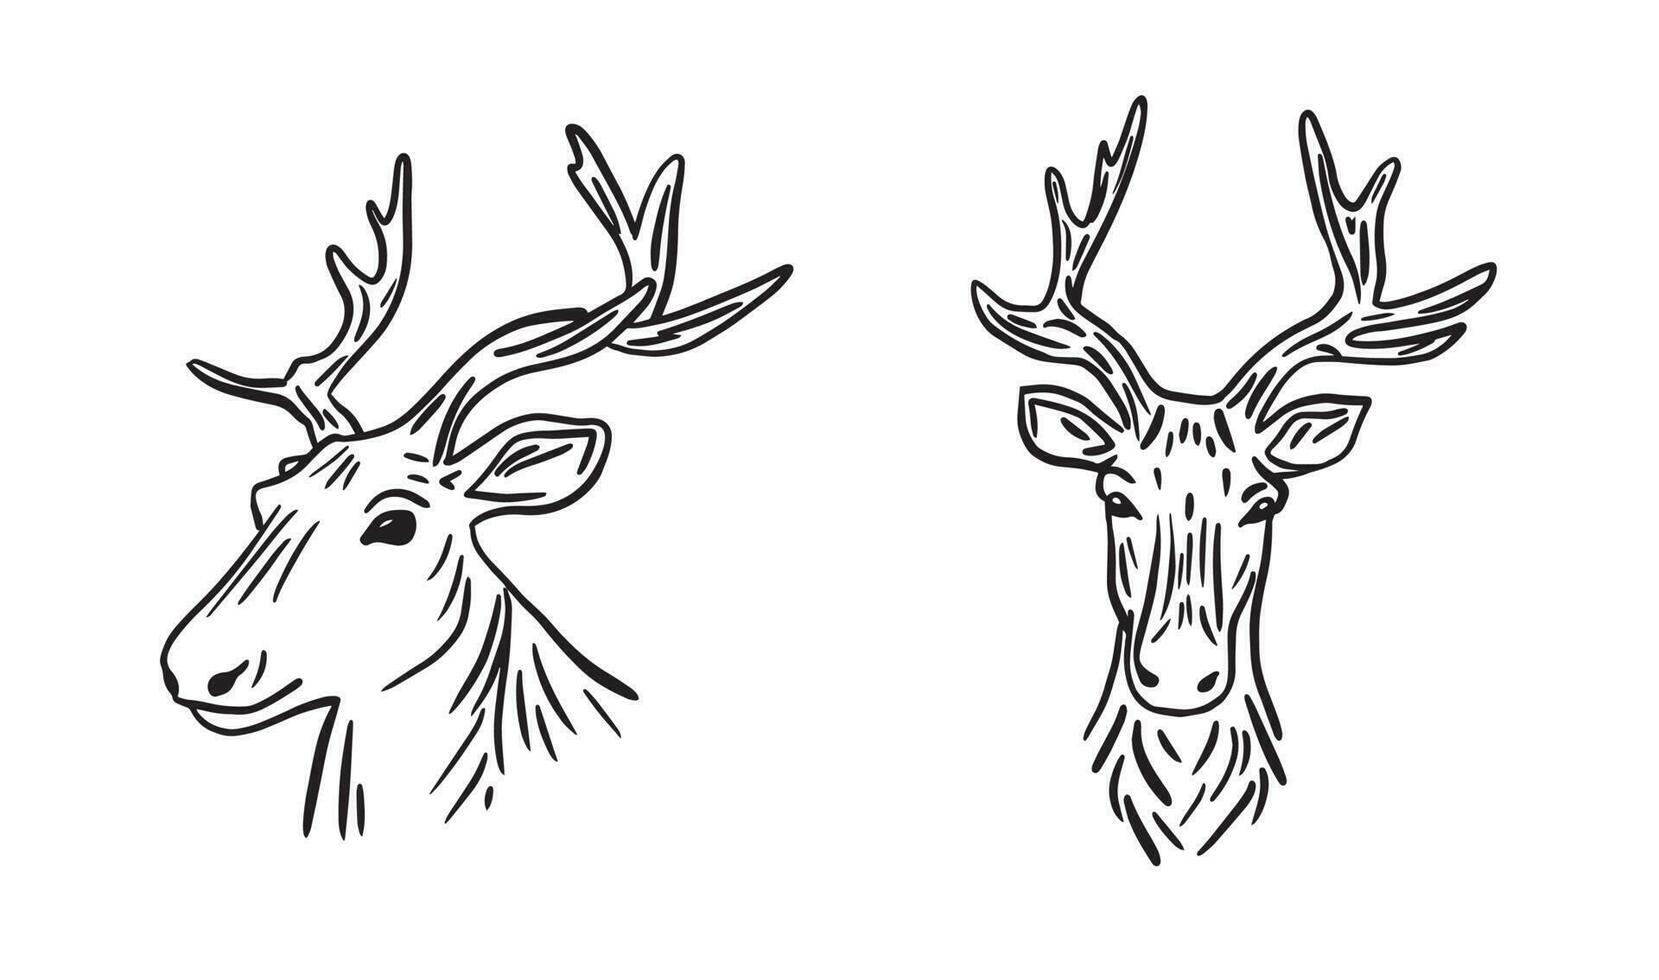 ciervo retrato mano dibujado vector.hocico de un ciervo en garabatear estilo mano dibujado.simbolo de cazadores vector